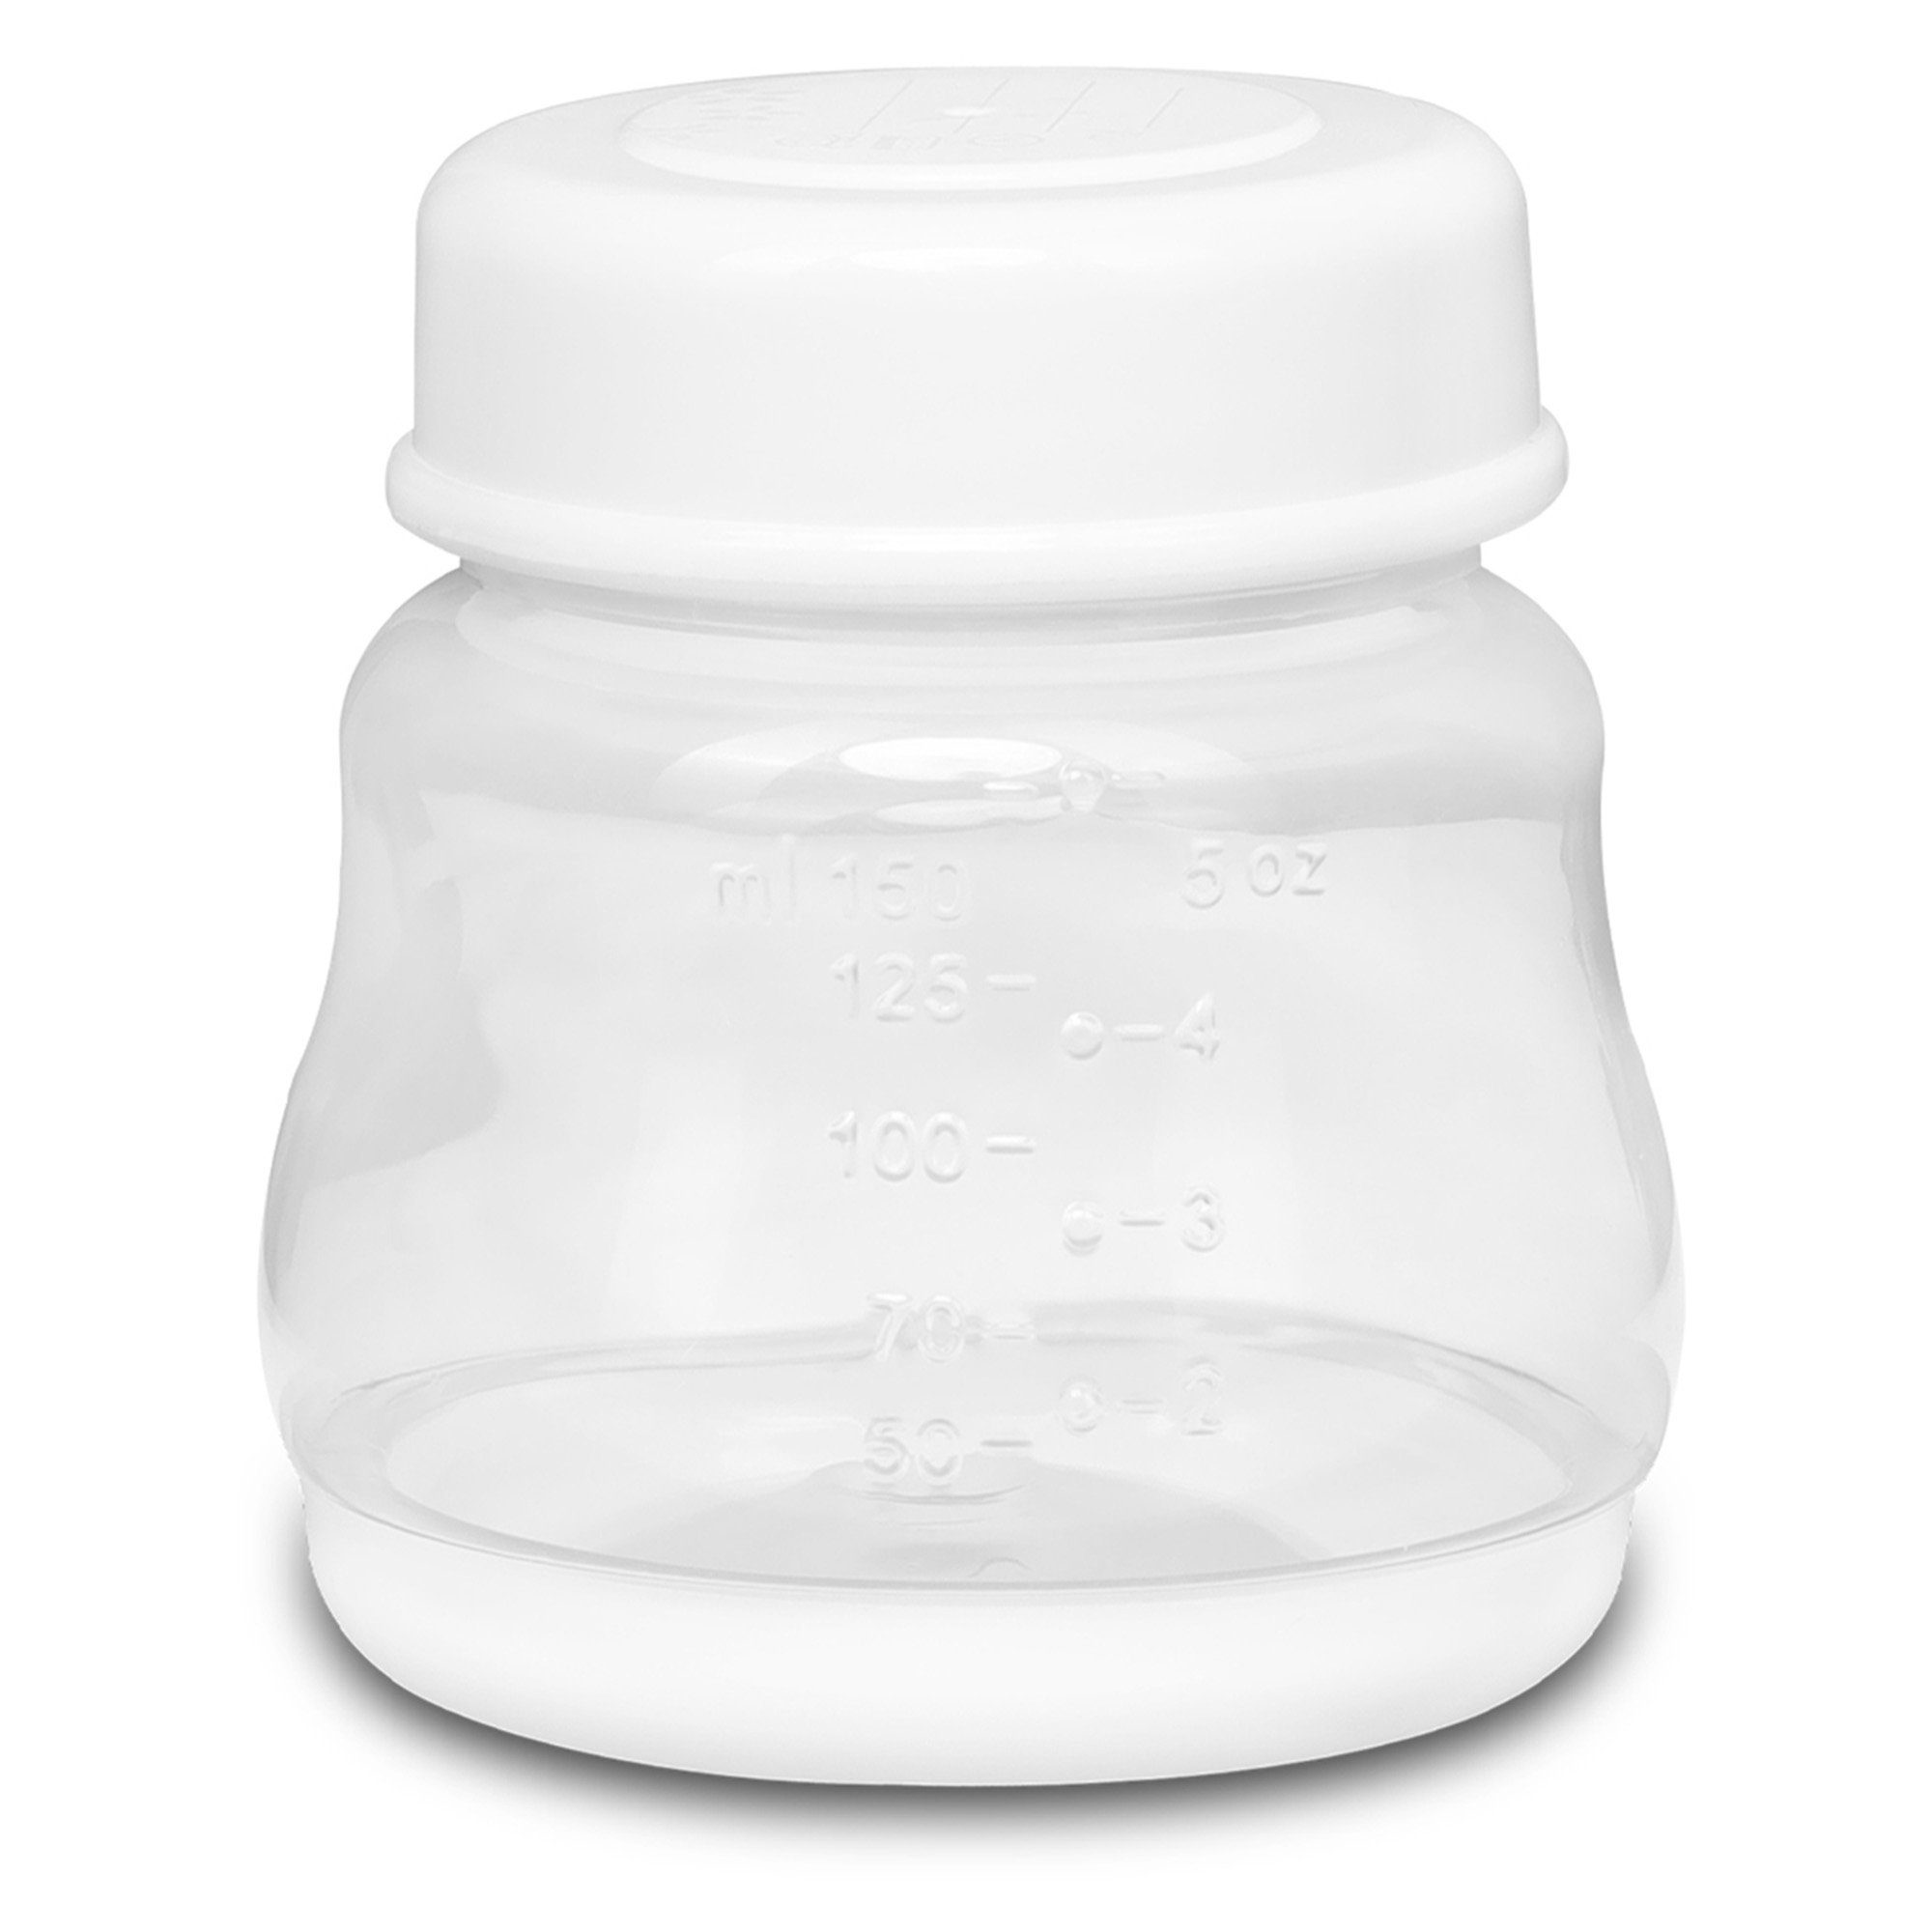 Kinder Babyernährung lionelo Elektrische Milchpumpe FIDI GO, LED-Anzeige BPA-freie Netzstrom Batterien